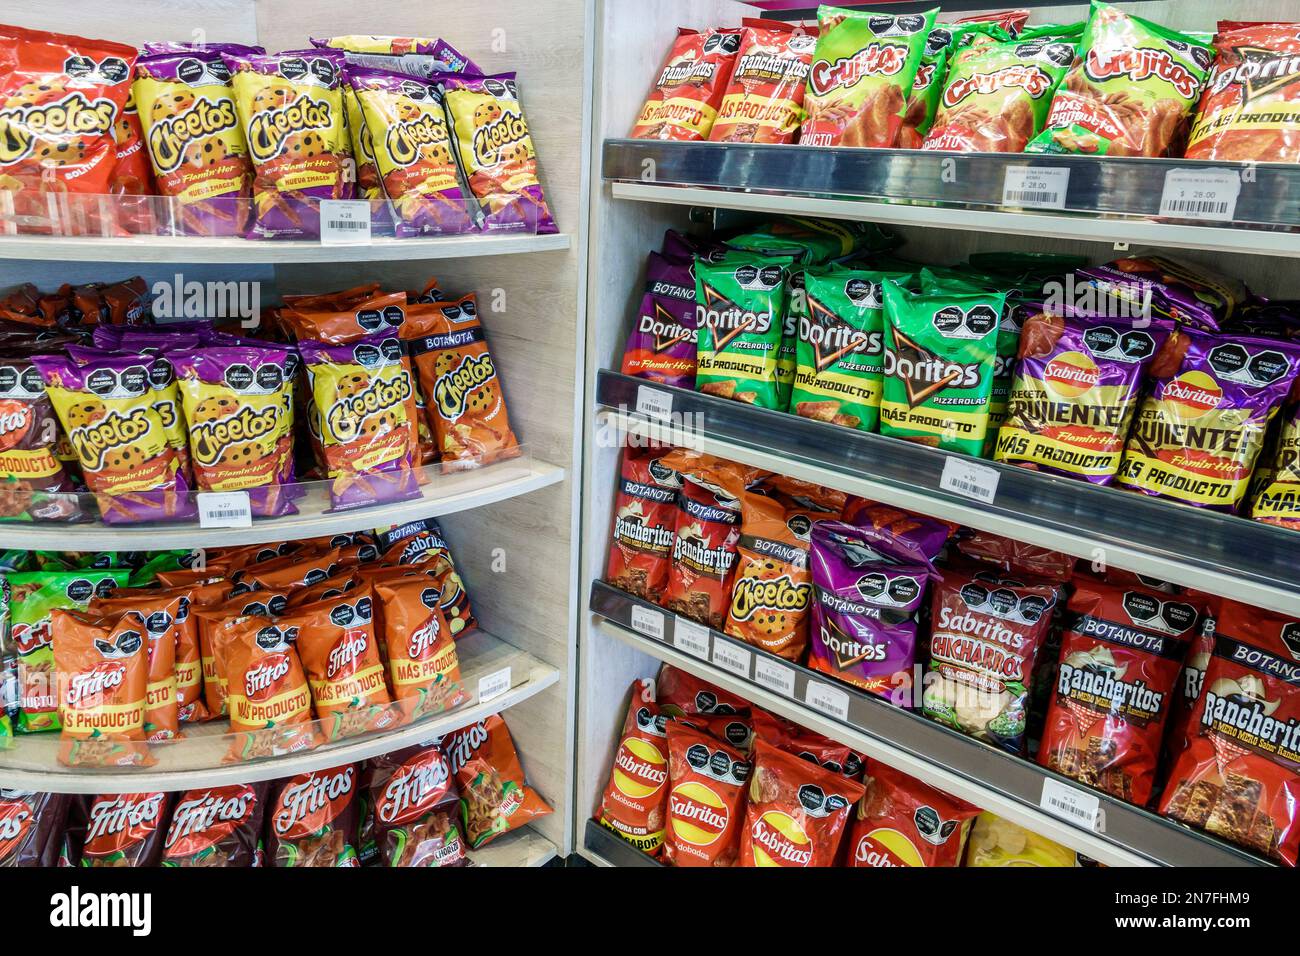 Bolsas de comida chatarra fotografías e imágenes de alta resolución - Alamy